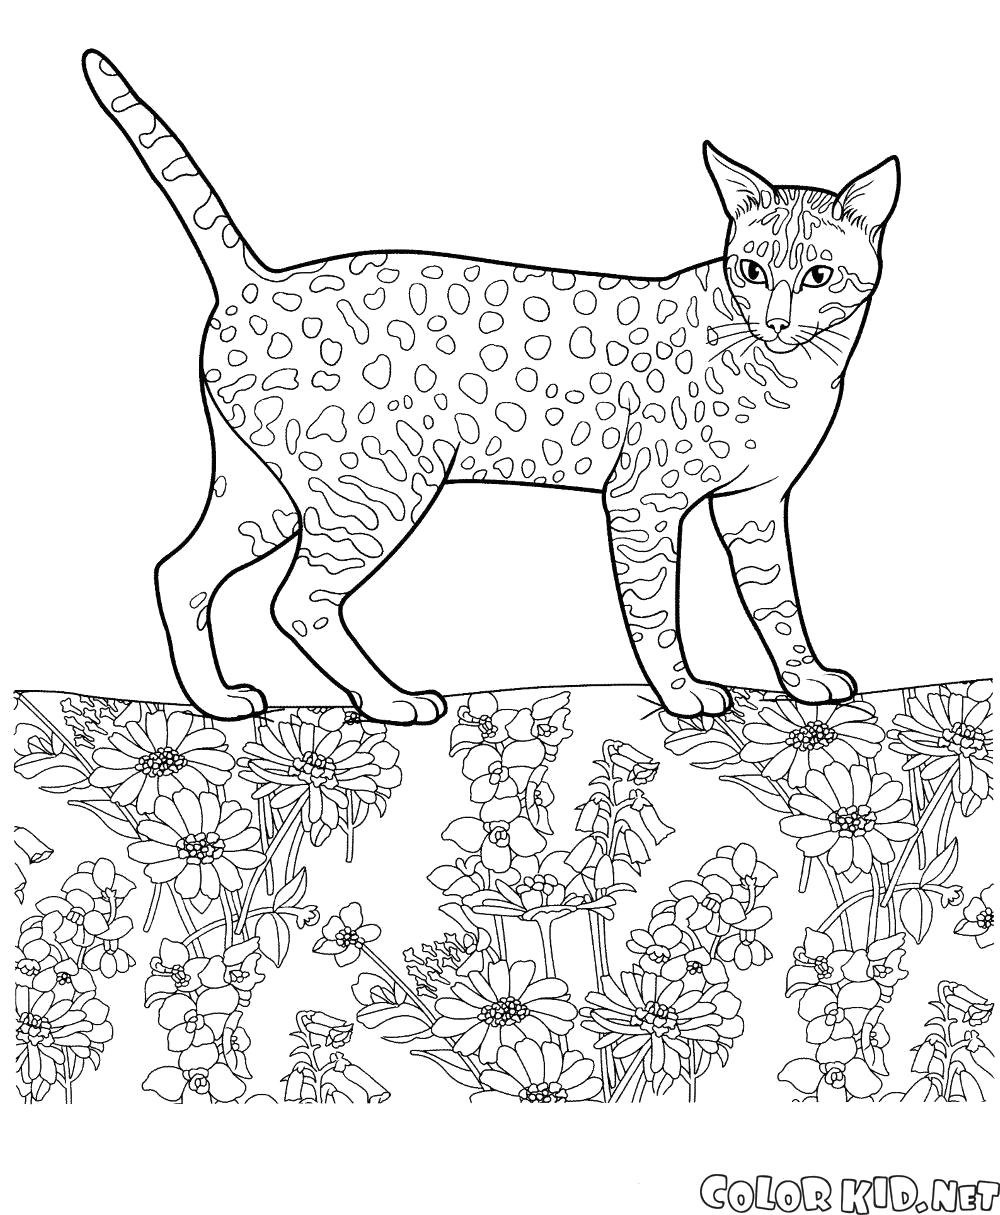 Раскраска Египетская мау. Скачать кошка.  Распечатать кошка